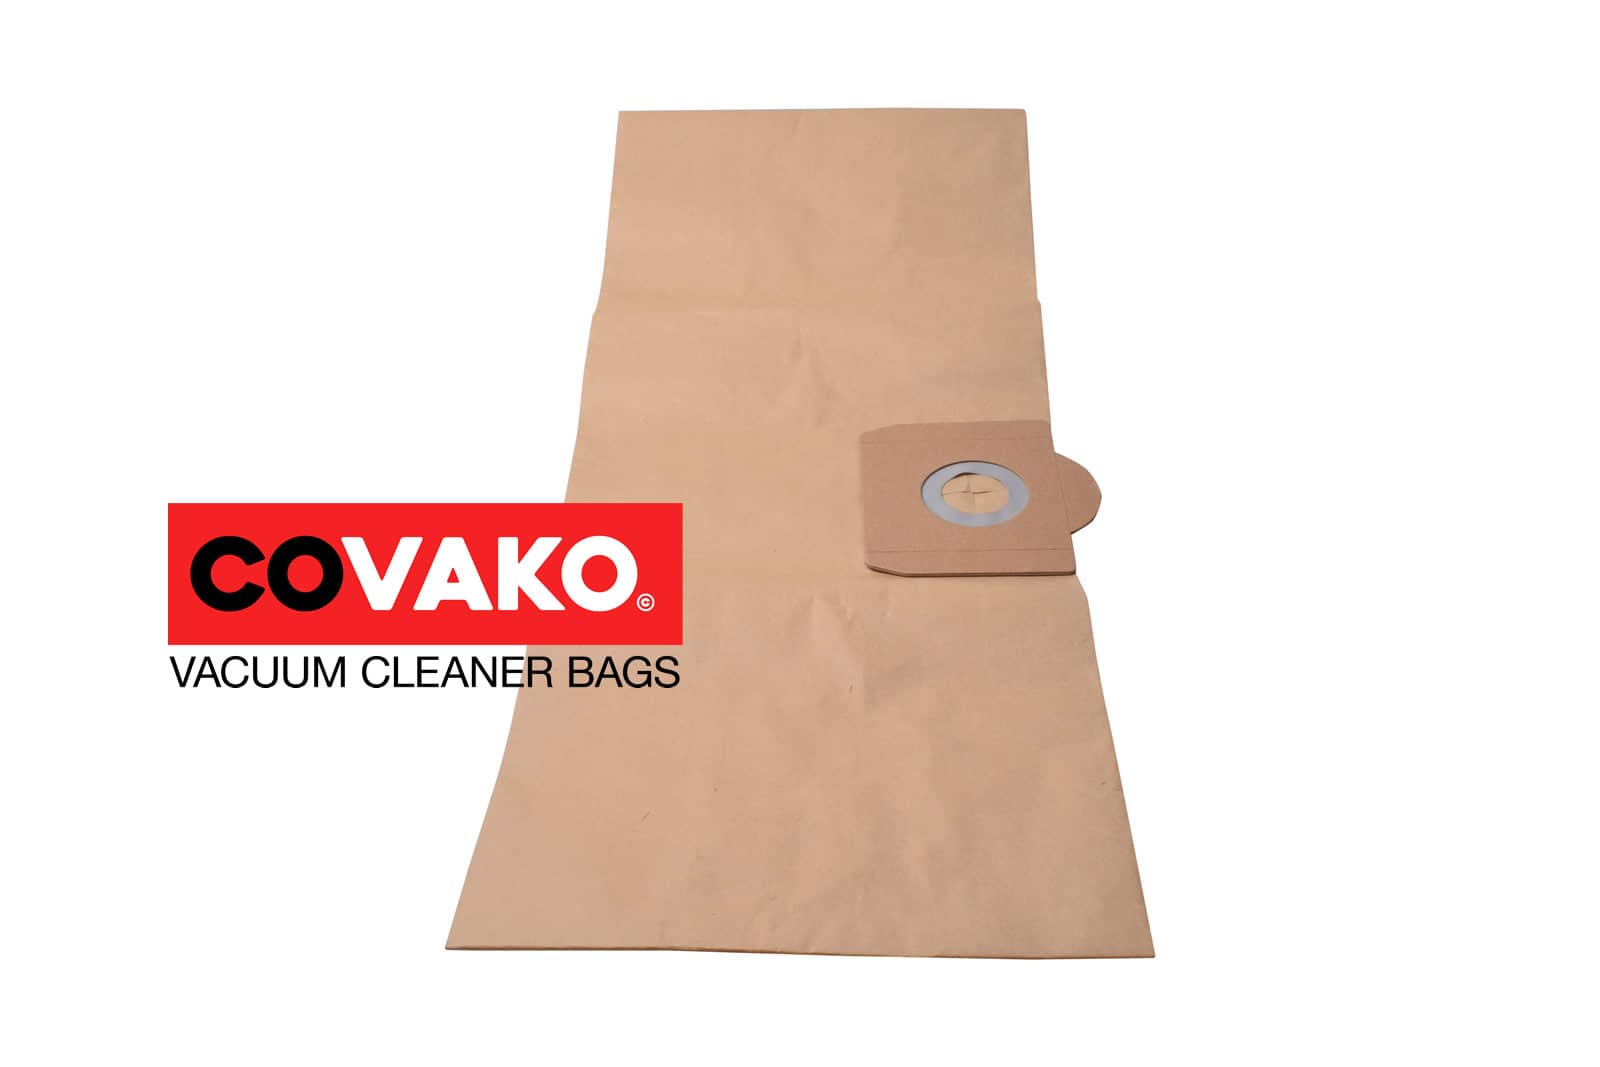 Elsea quiet A class 3.0 / Paper - Elsea vacuum cleaner bags